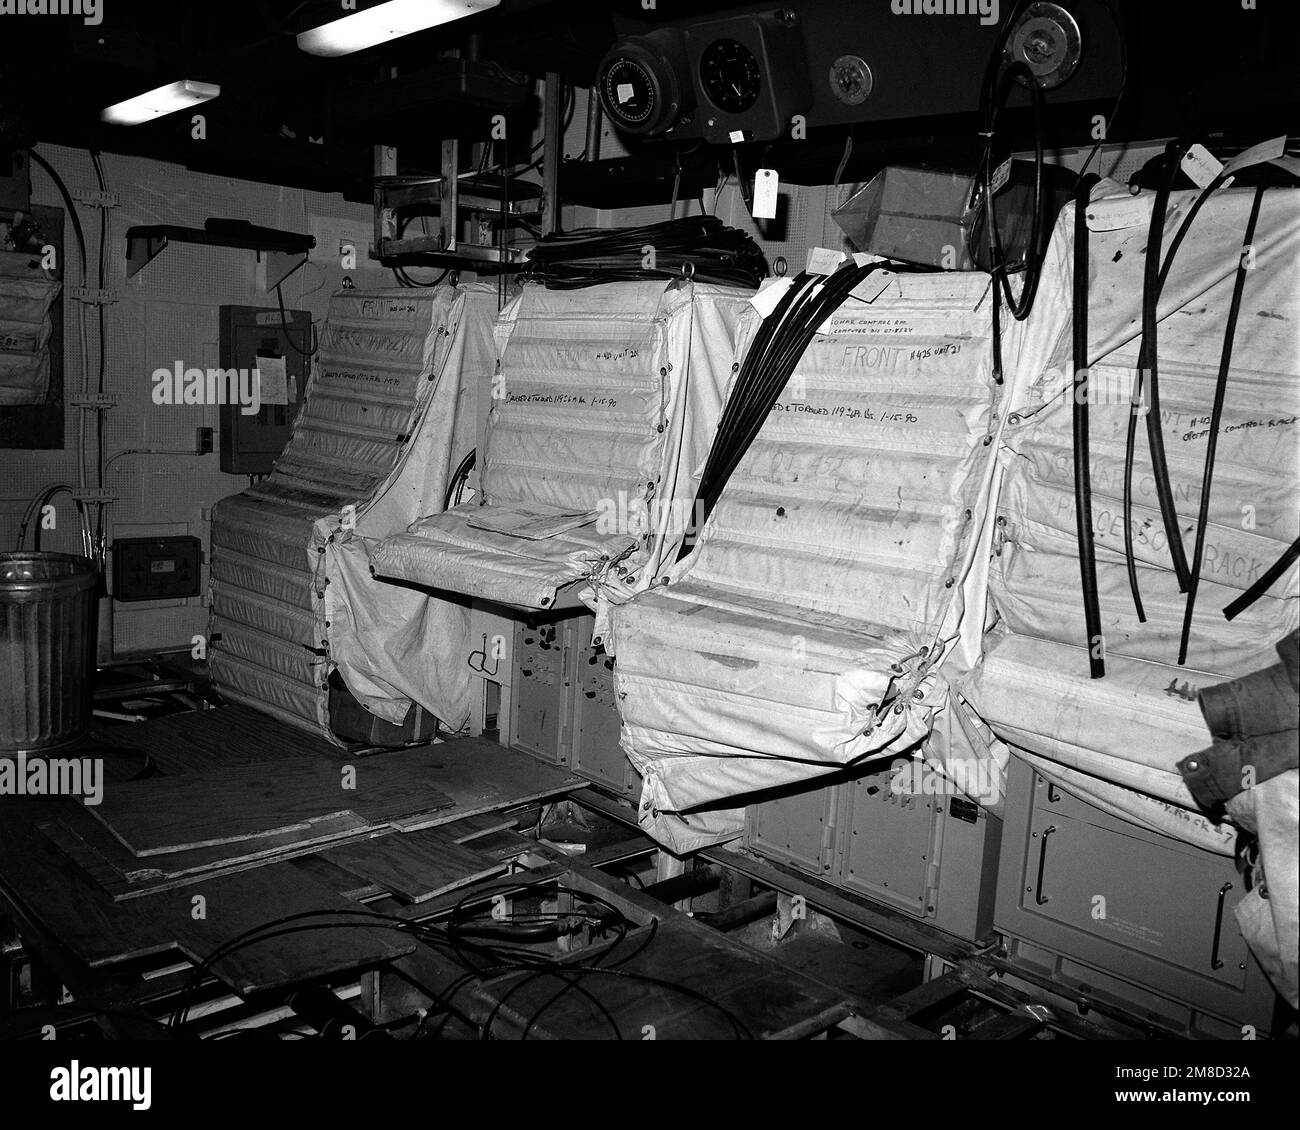 Una vista de la sala de control de sonar del crucero de misiles guiado GETTYSBURG (CG-64) durante la construcción. El barco está 70 por ciento completo. Base: Bath Estado: Maine (ME) País: United States of America (USA) Foto de stock